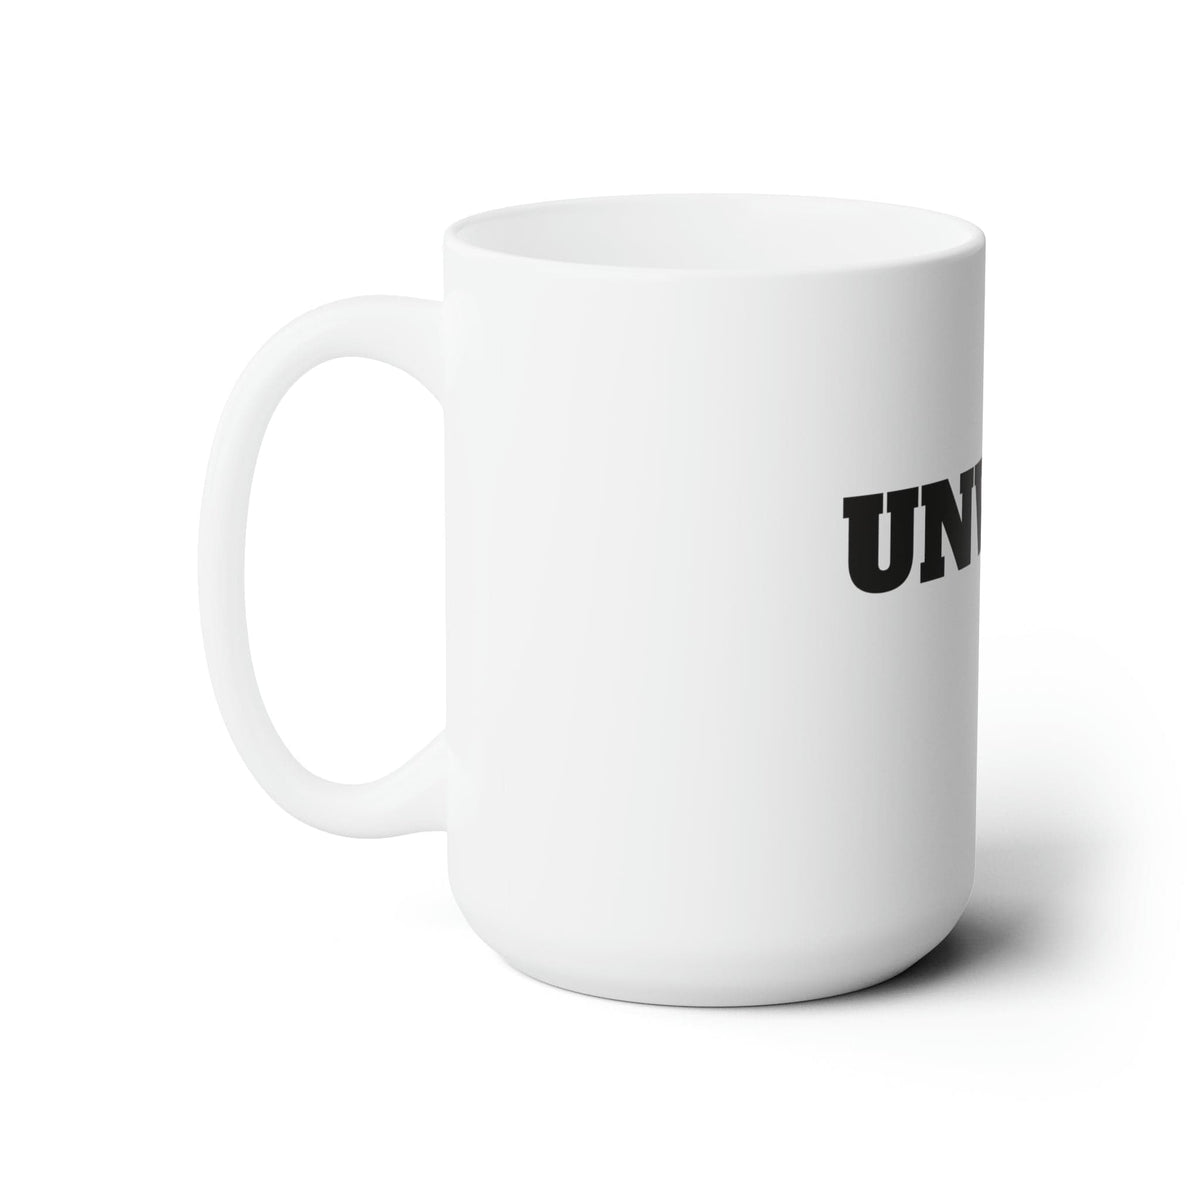 Unwell Ceramic Mug 15oz | Funny Mugs | I am Unwell | Gifts for Friends Mug TheFringeCultureCollective